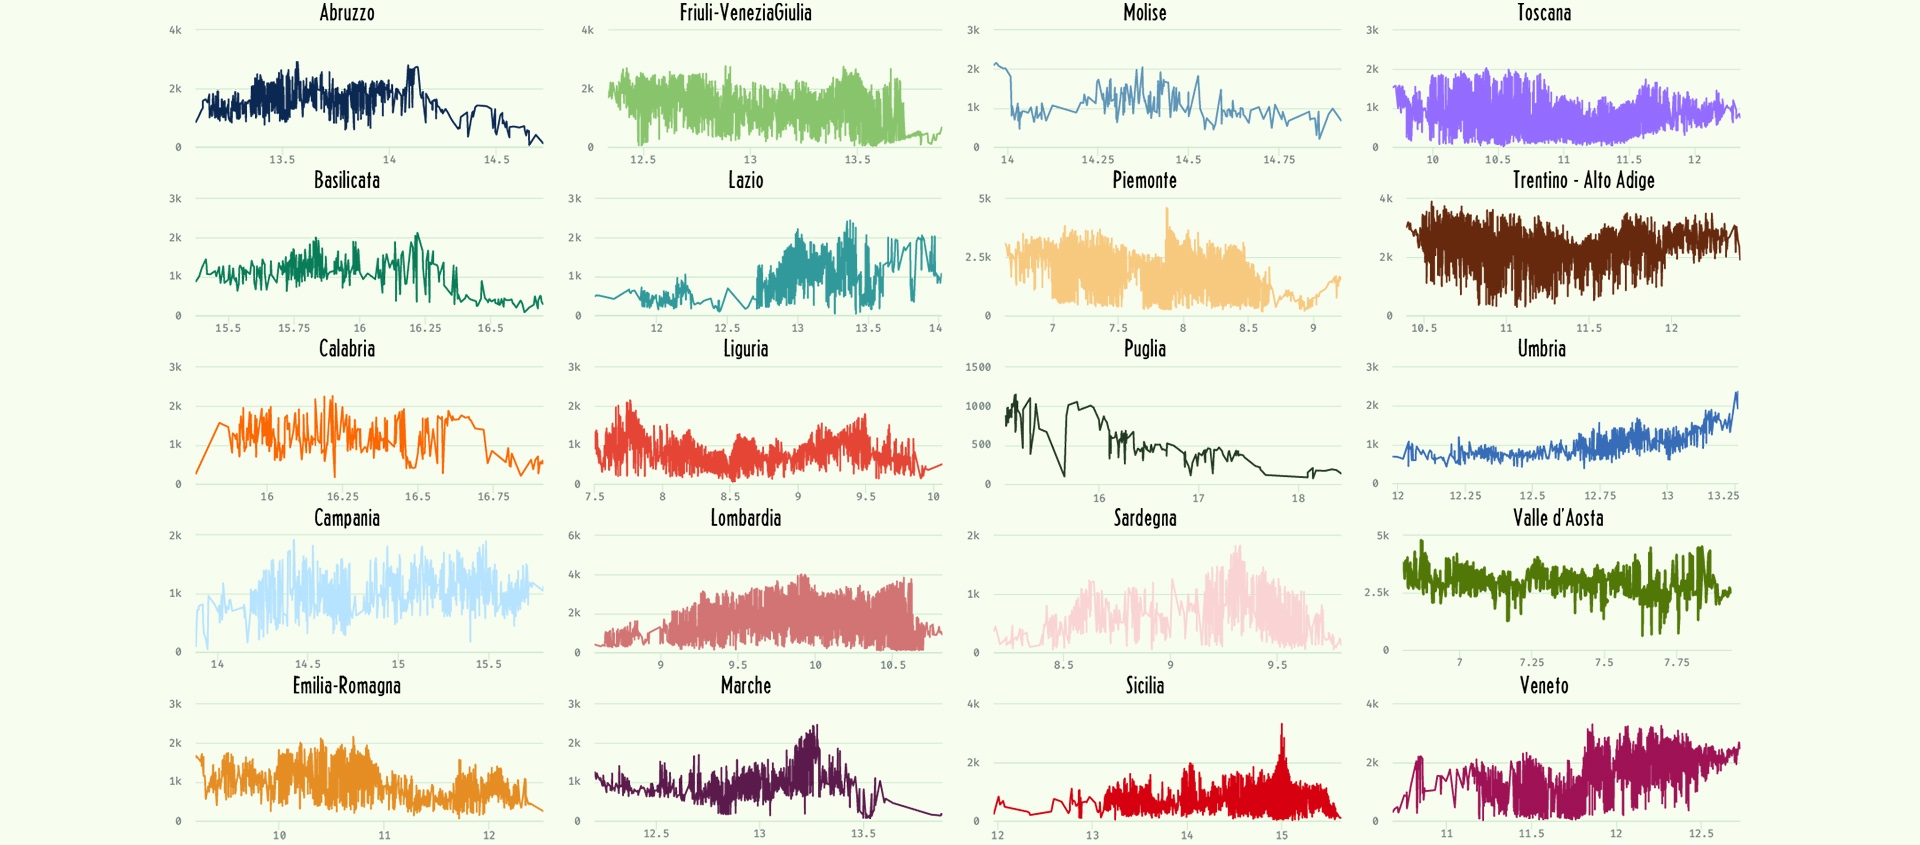 serie of peaks profile of each region